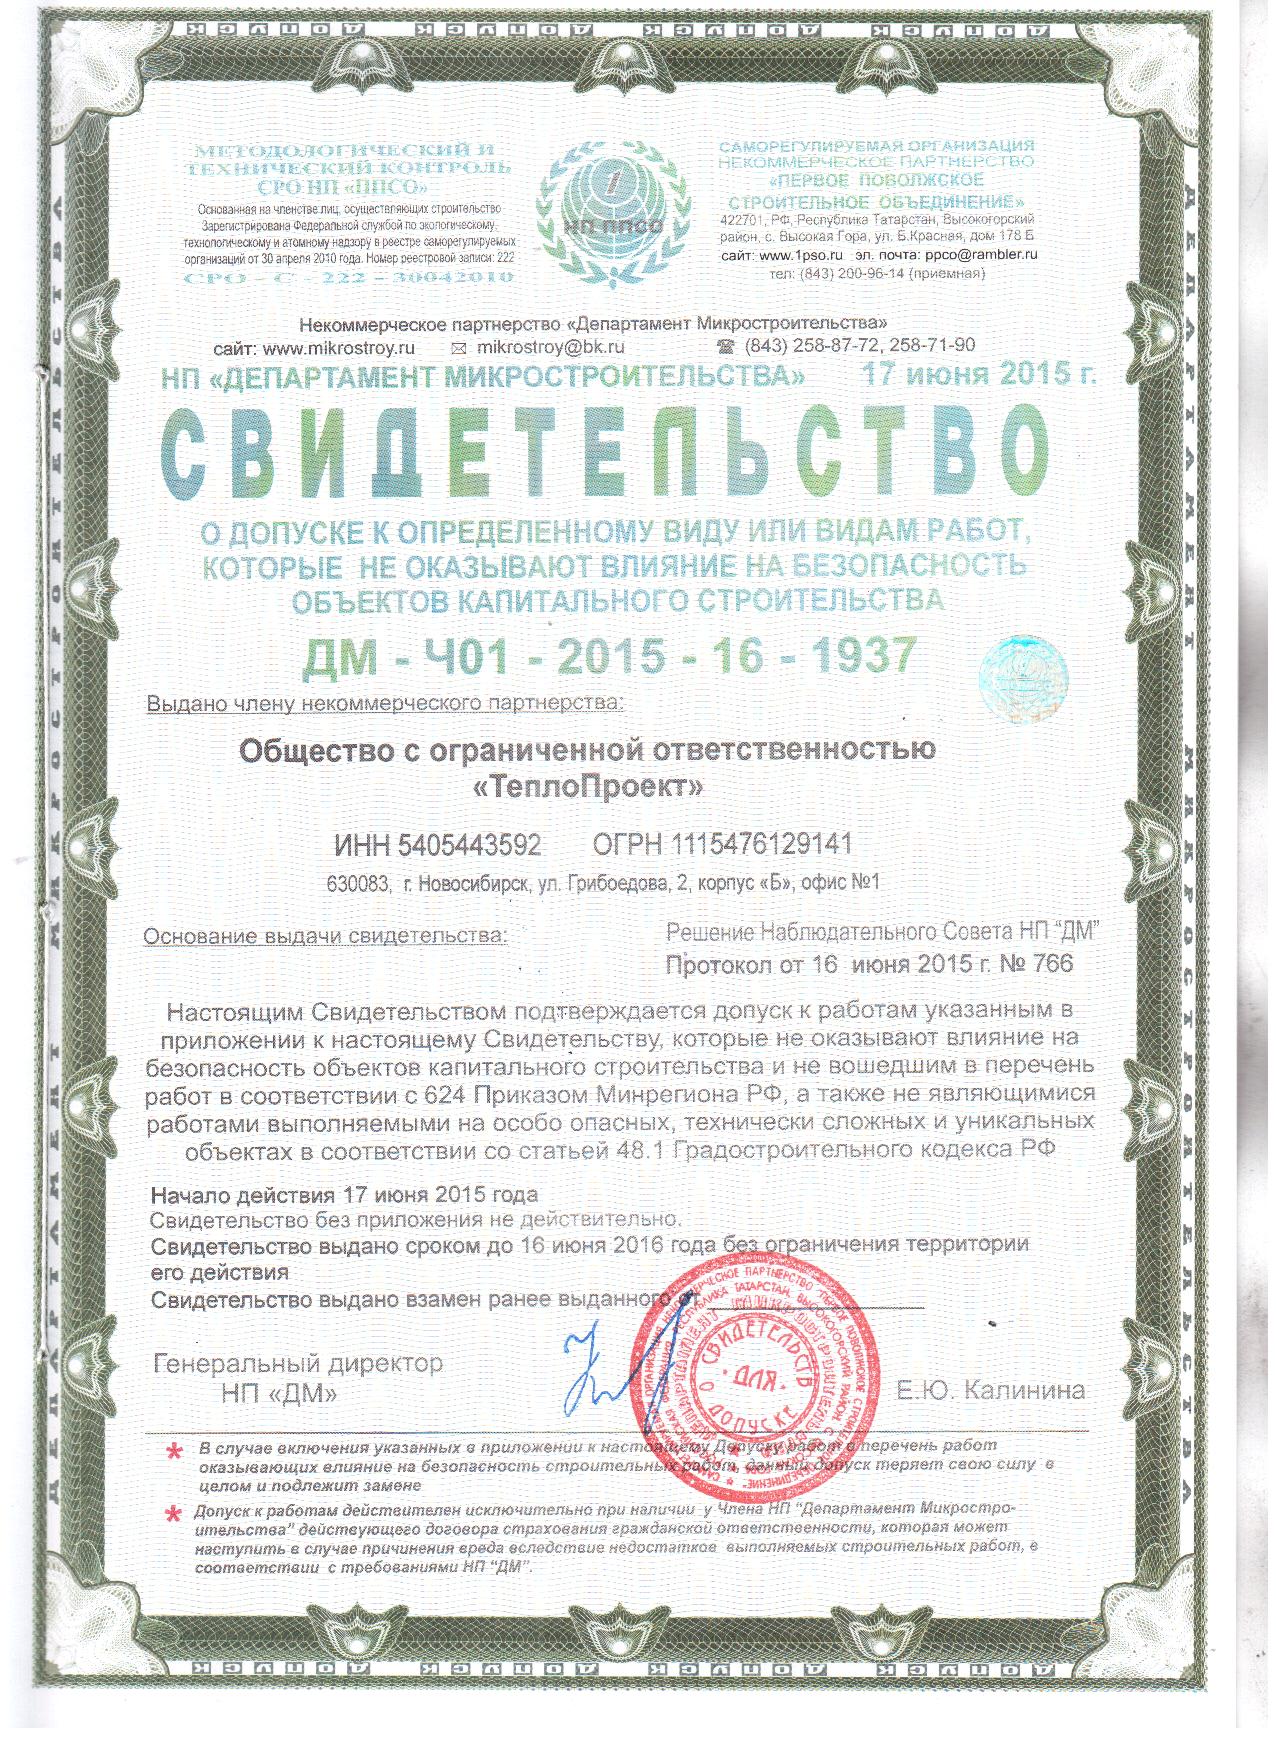 Сертификат «Теплопроект Новосибирск»